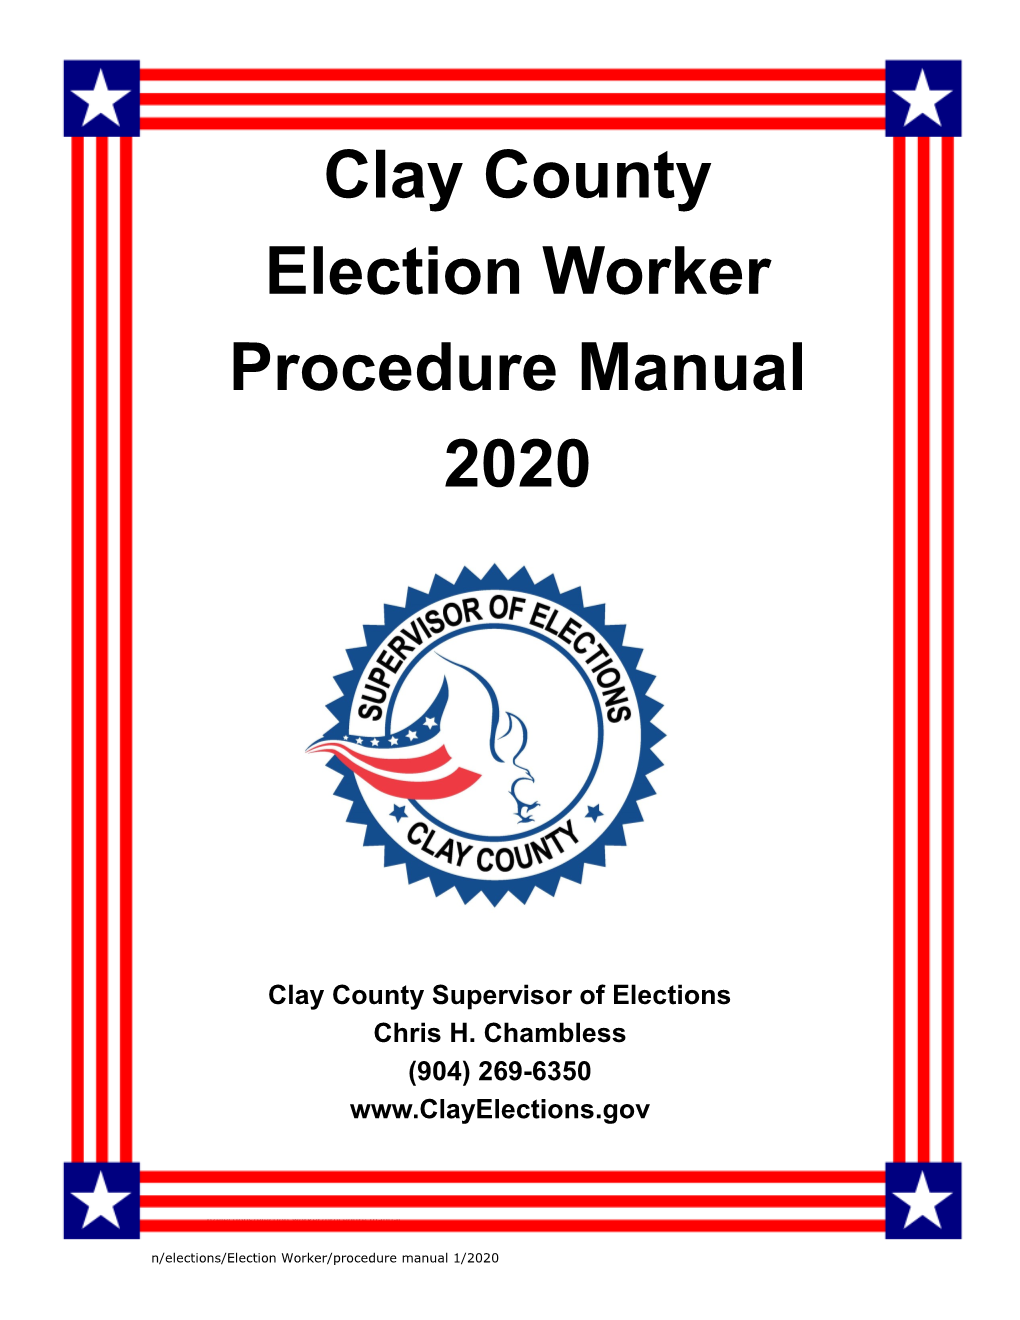 Election Worker Procedures Manual